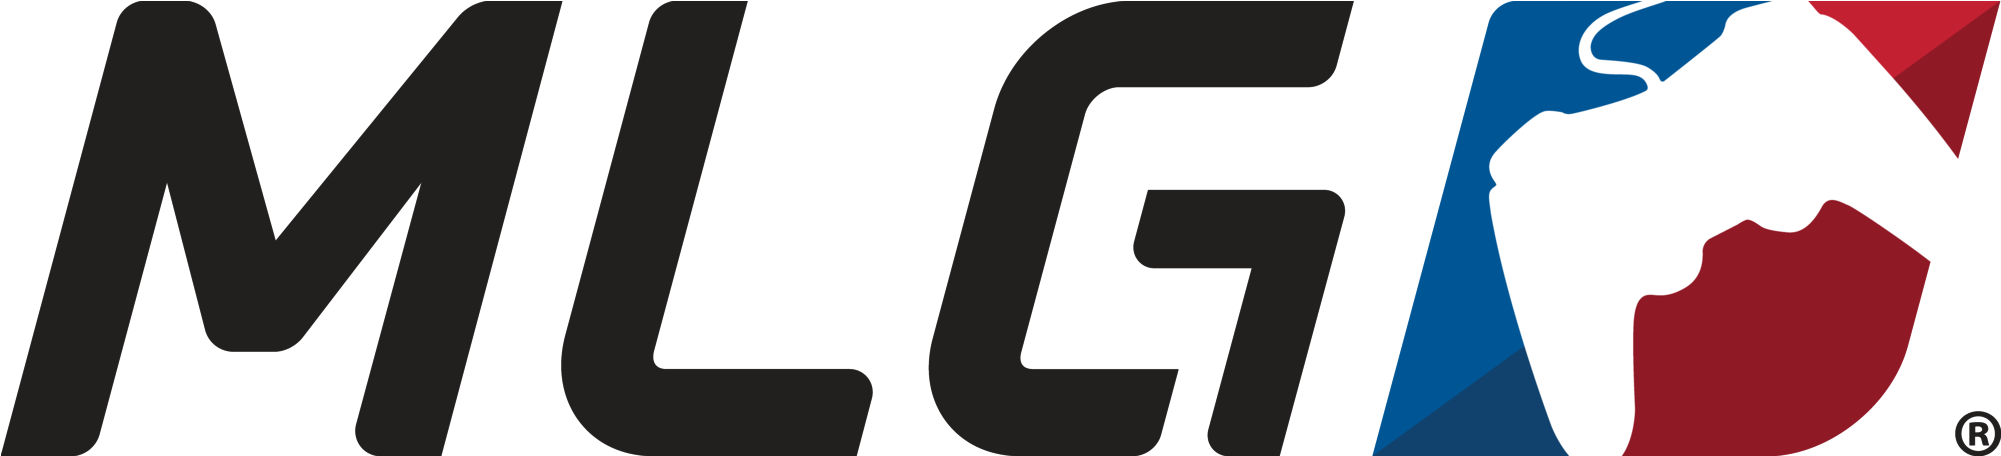 Mlg Logo - Major League Gaming Logo (2294x700)